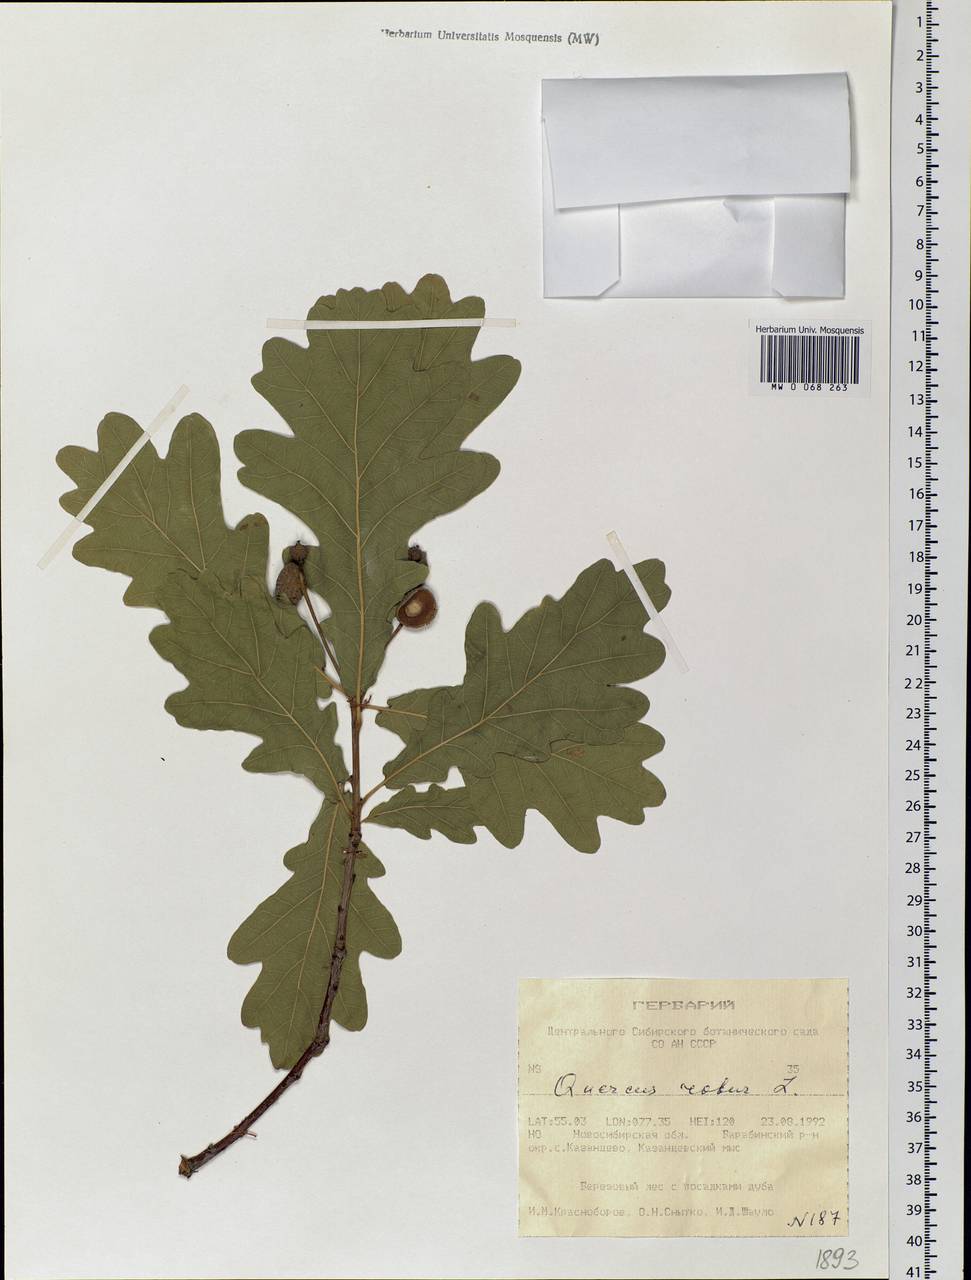 Quercus robur L., Siberia, Western Siberia (S1) (Russia)